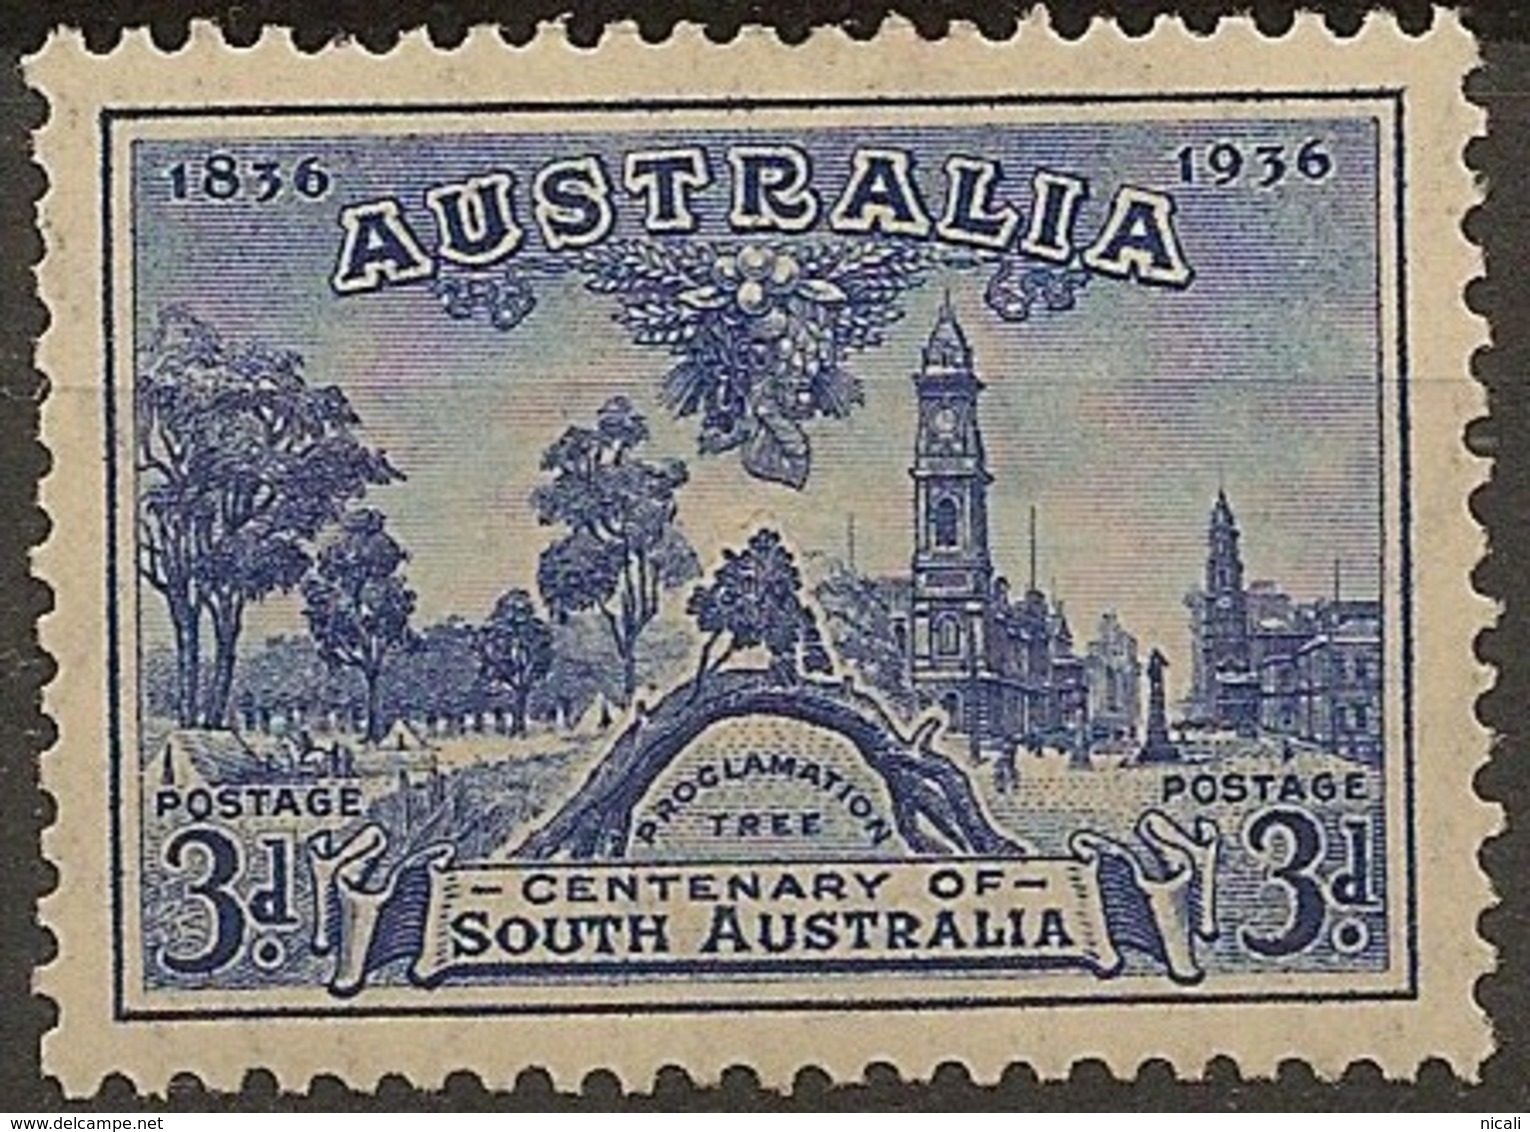 AUSTRALIA 1936 3d South Australia SG 162 HM #BE153 - Mint Stamps